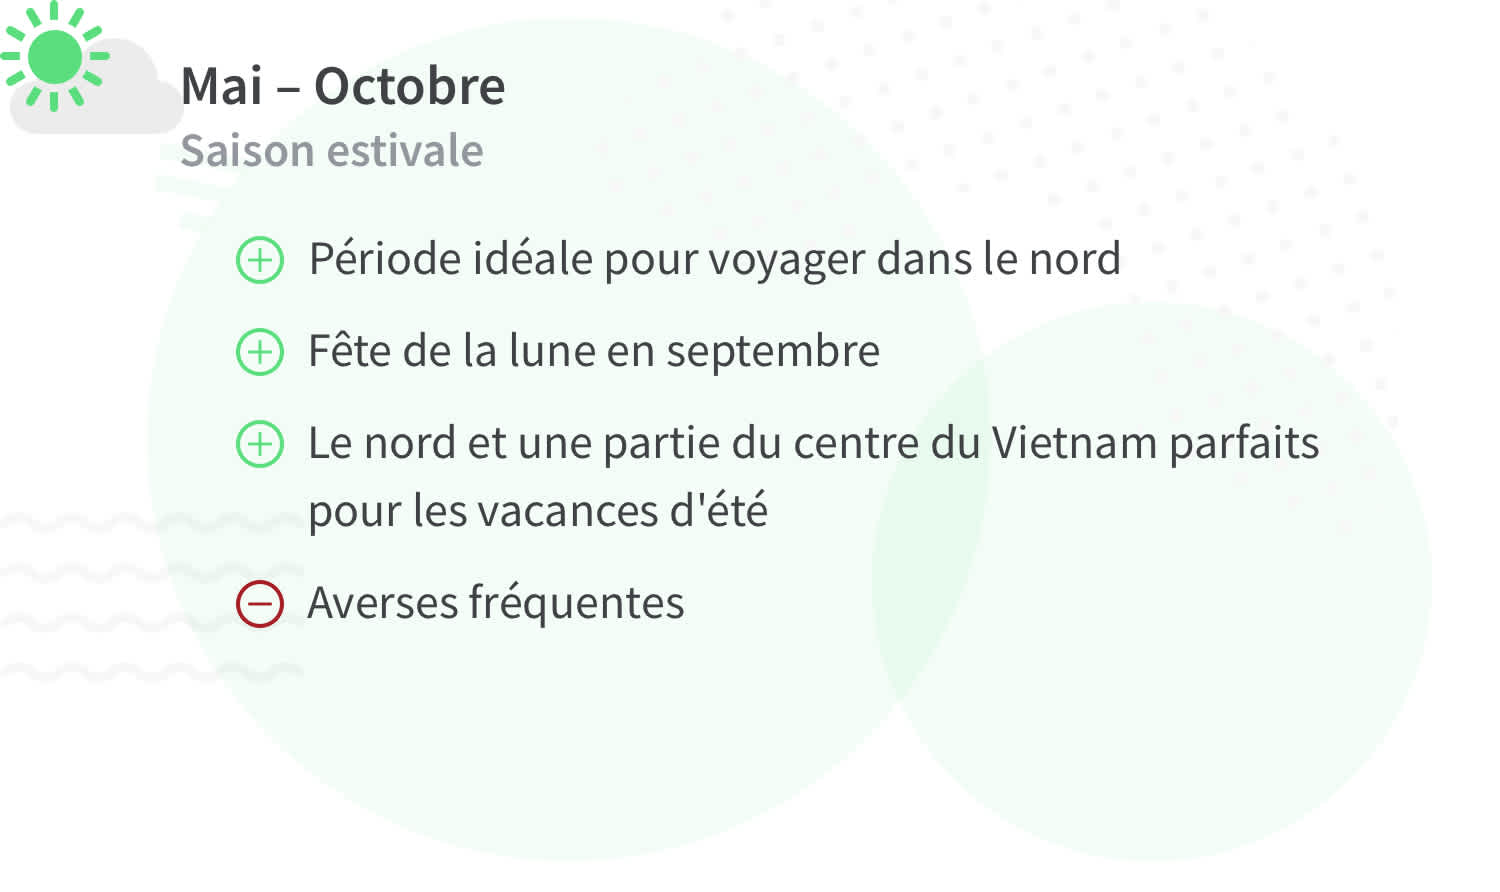 Avantages et inconvénients d'un voyage au Vietnam pendant les mois d'été (mai à octobre).